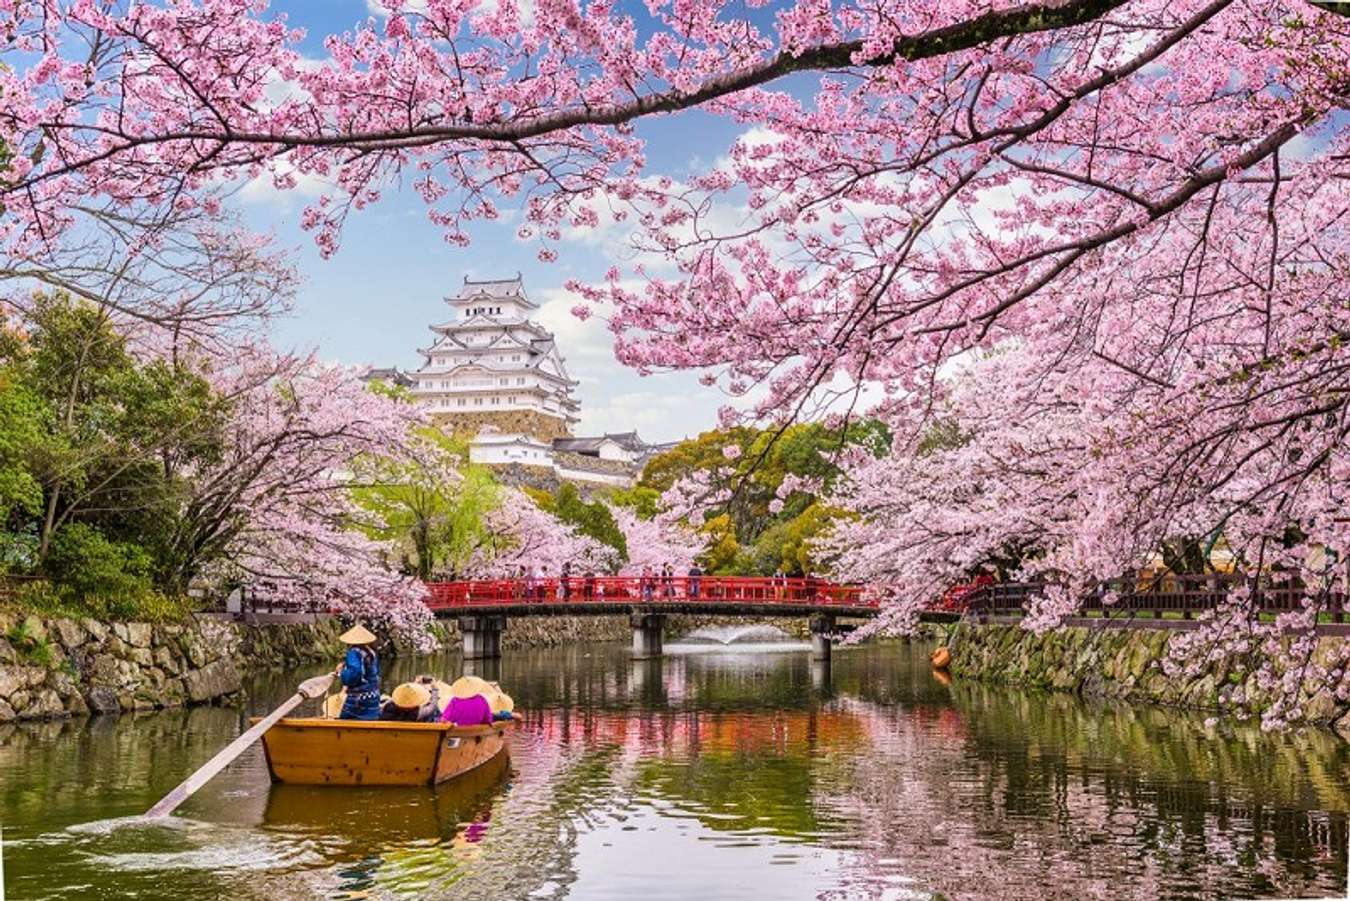 Du lịch Nhật Bản: Khám phá Quốc đảo Ngọc với những trải nghiệm không thể bỏ qua